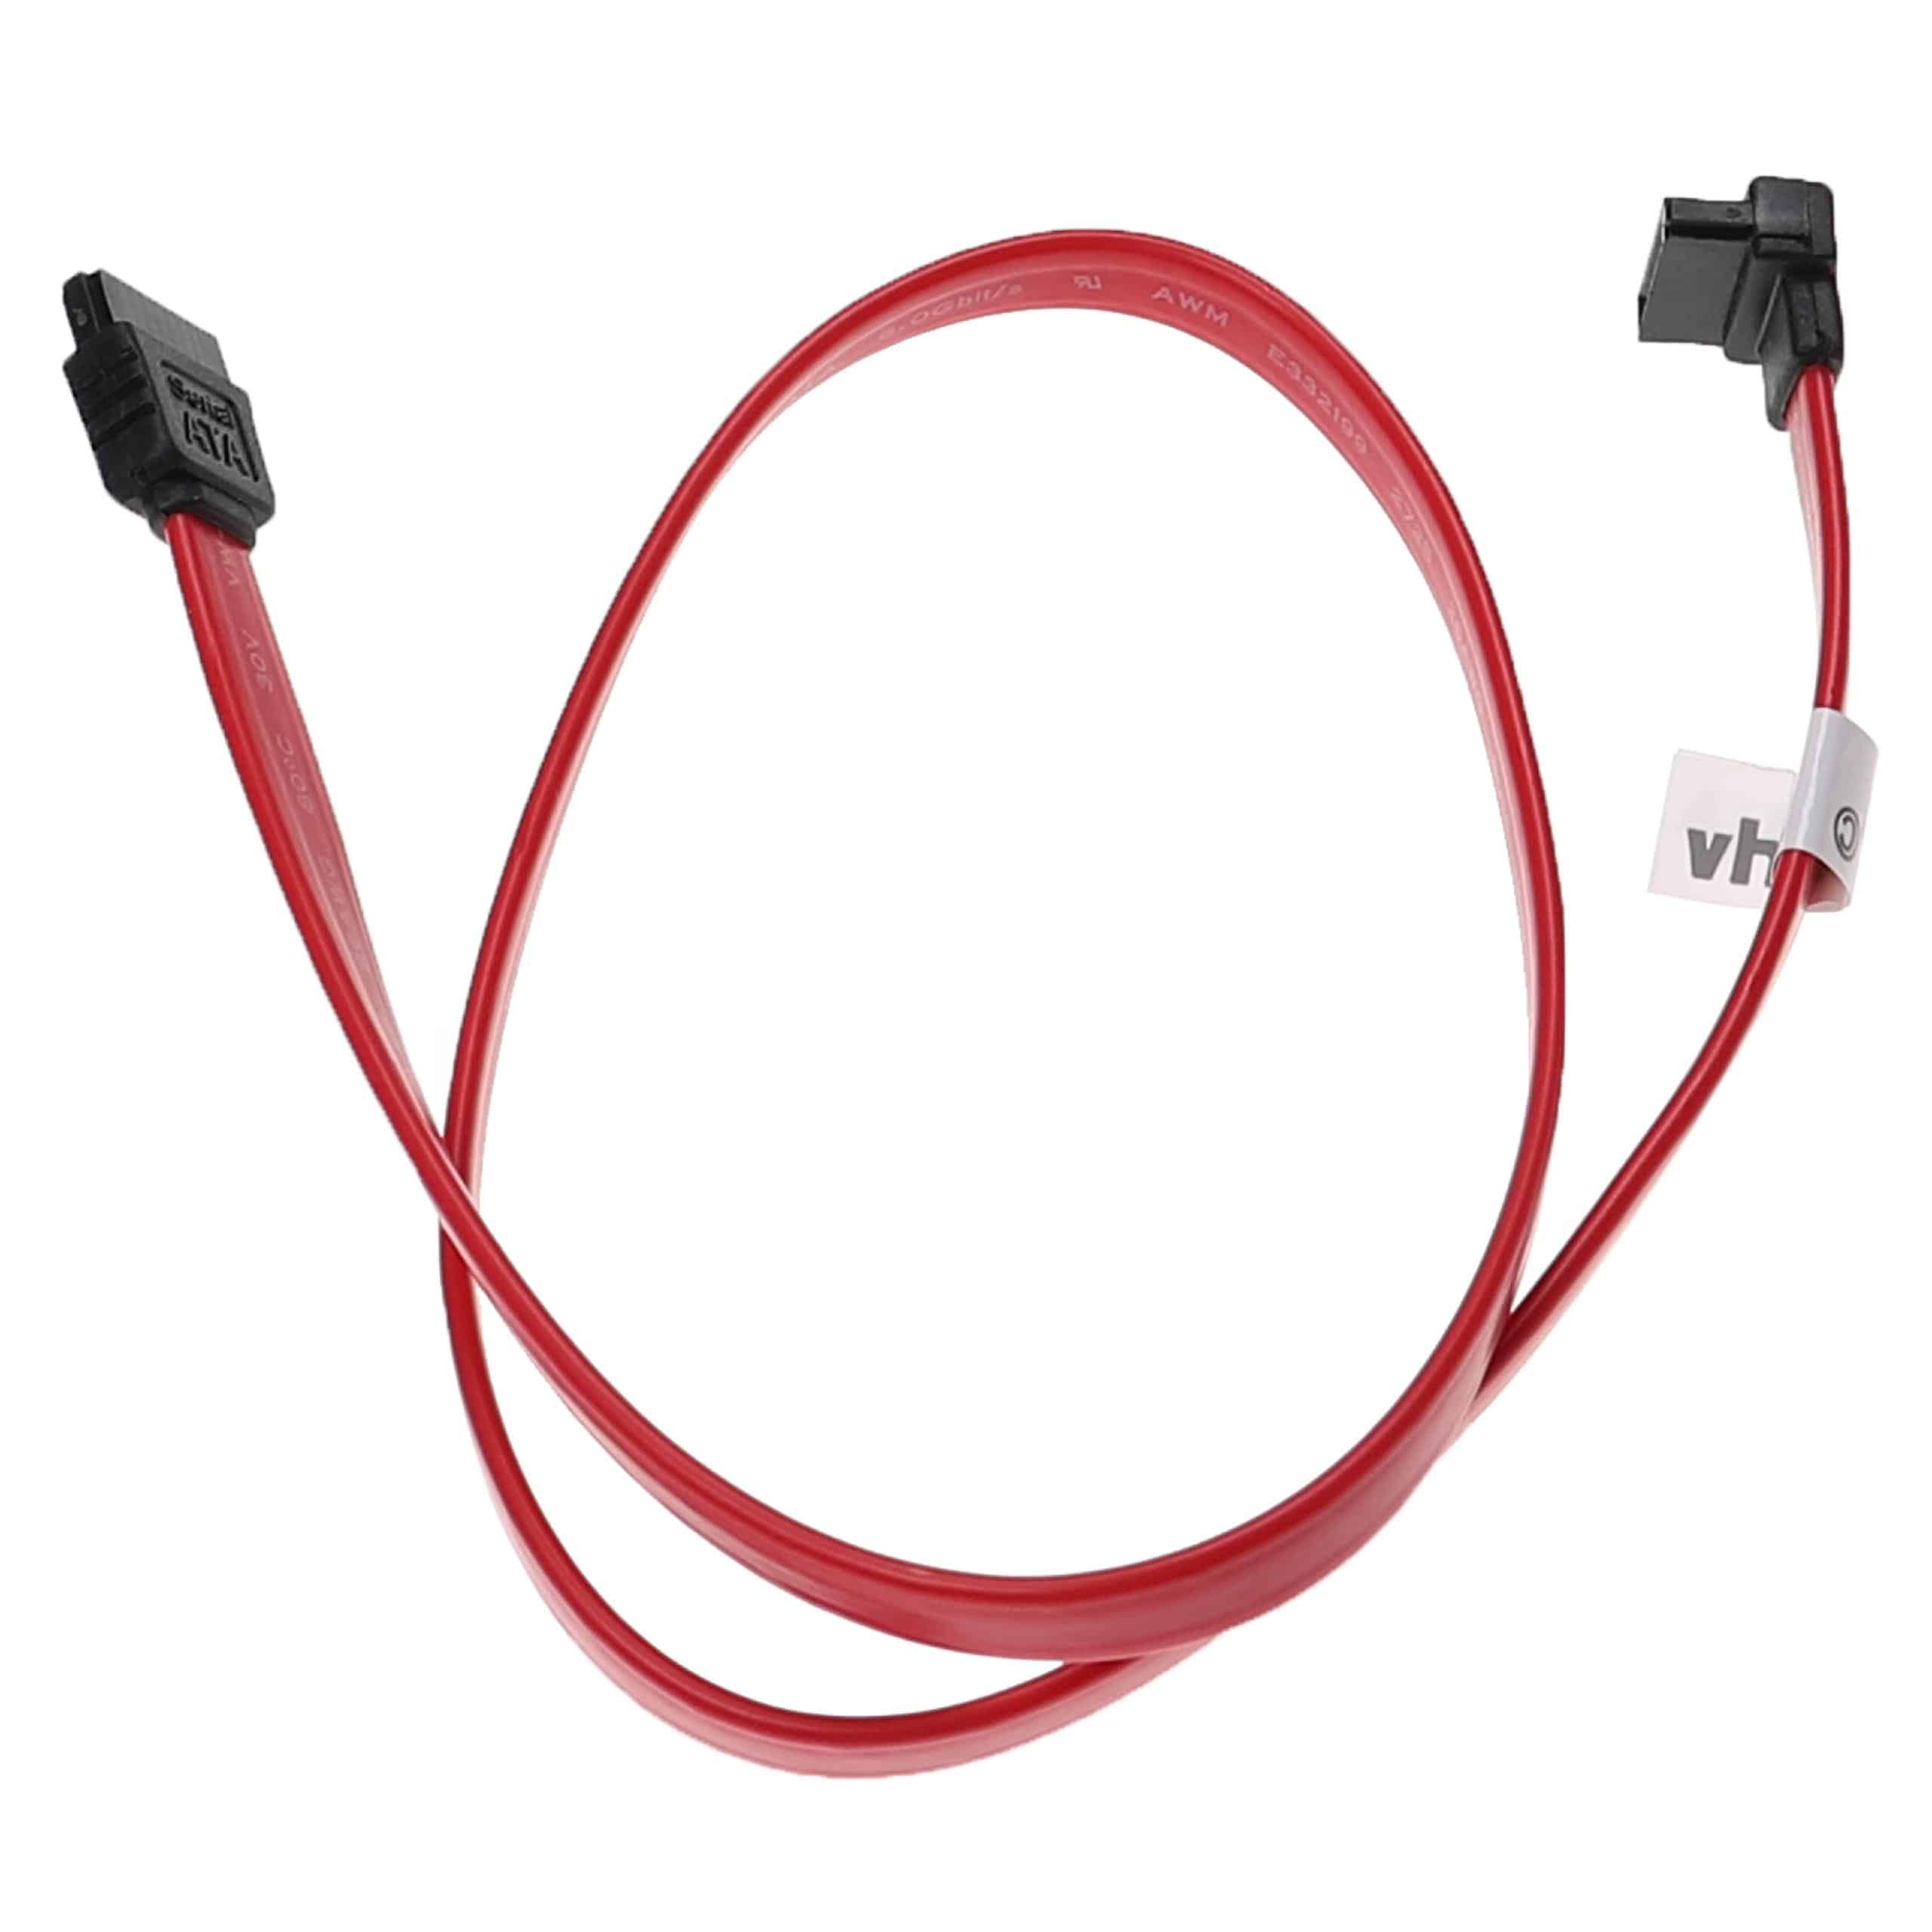 Cable SATA recto - ángulo de 90° compatible con discos duros - Cable de datos, 50 cm